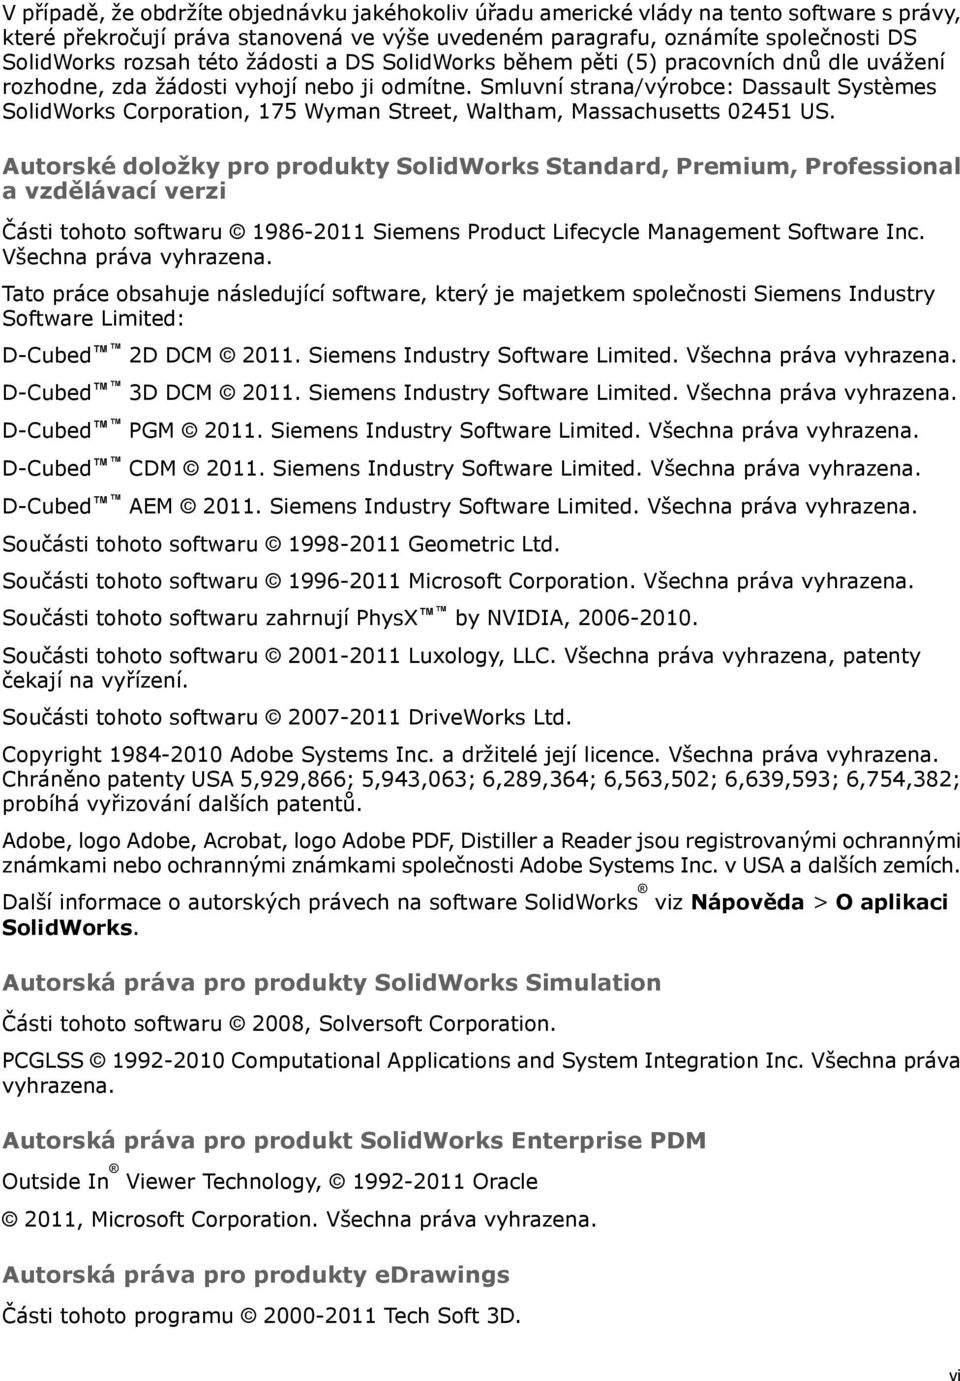 Smluvní strana/výrobce: Dassault Systèmes SolidWorks Corporation, 175 Wyman Street, Waltham, Massachusetts 02451 US.